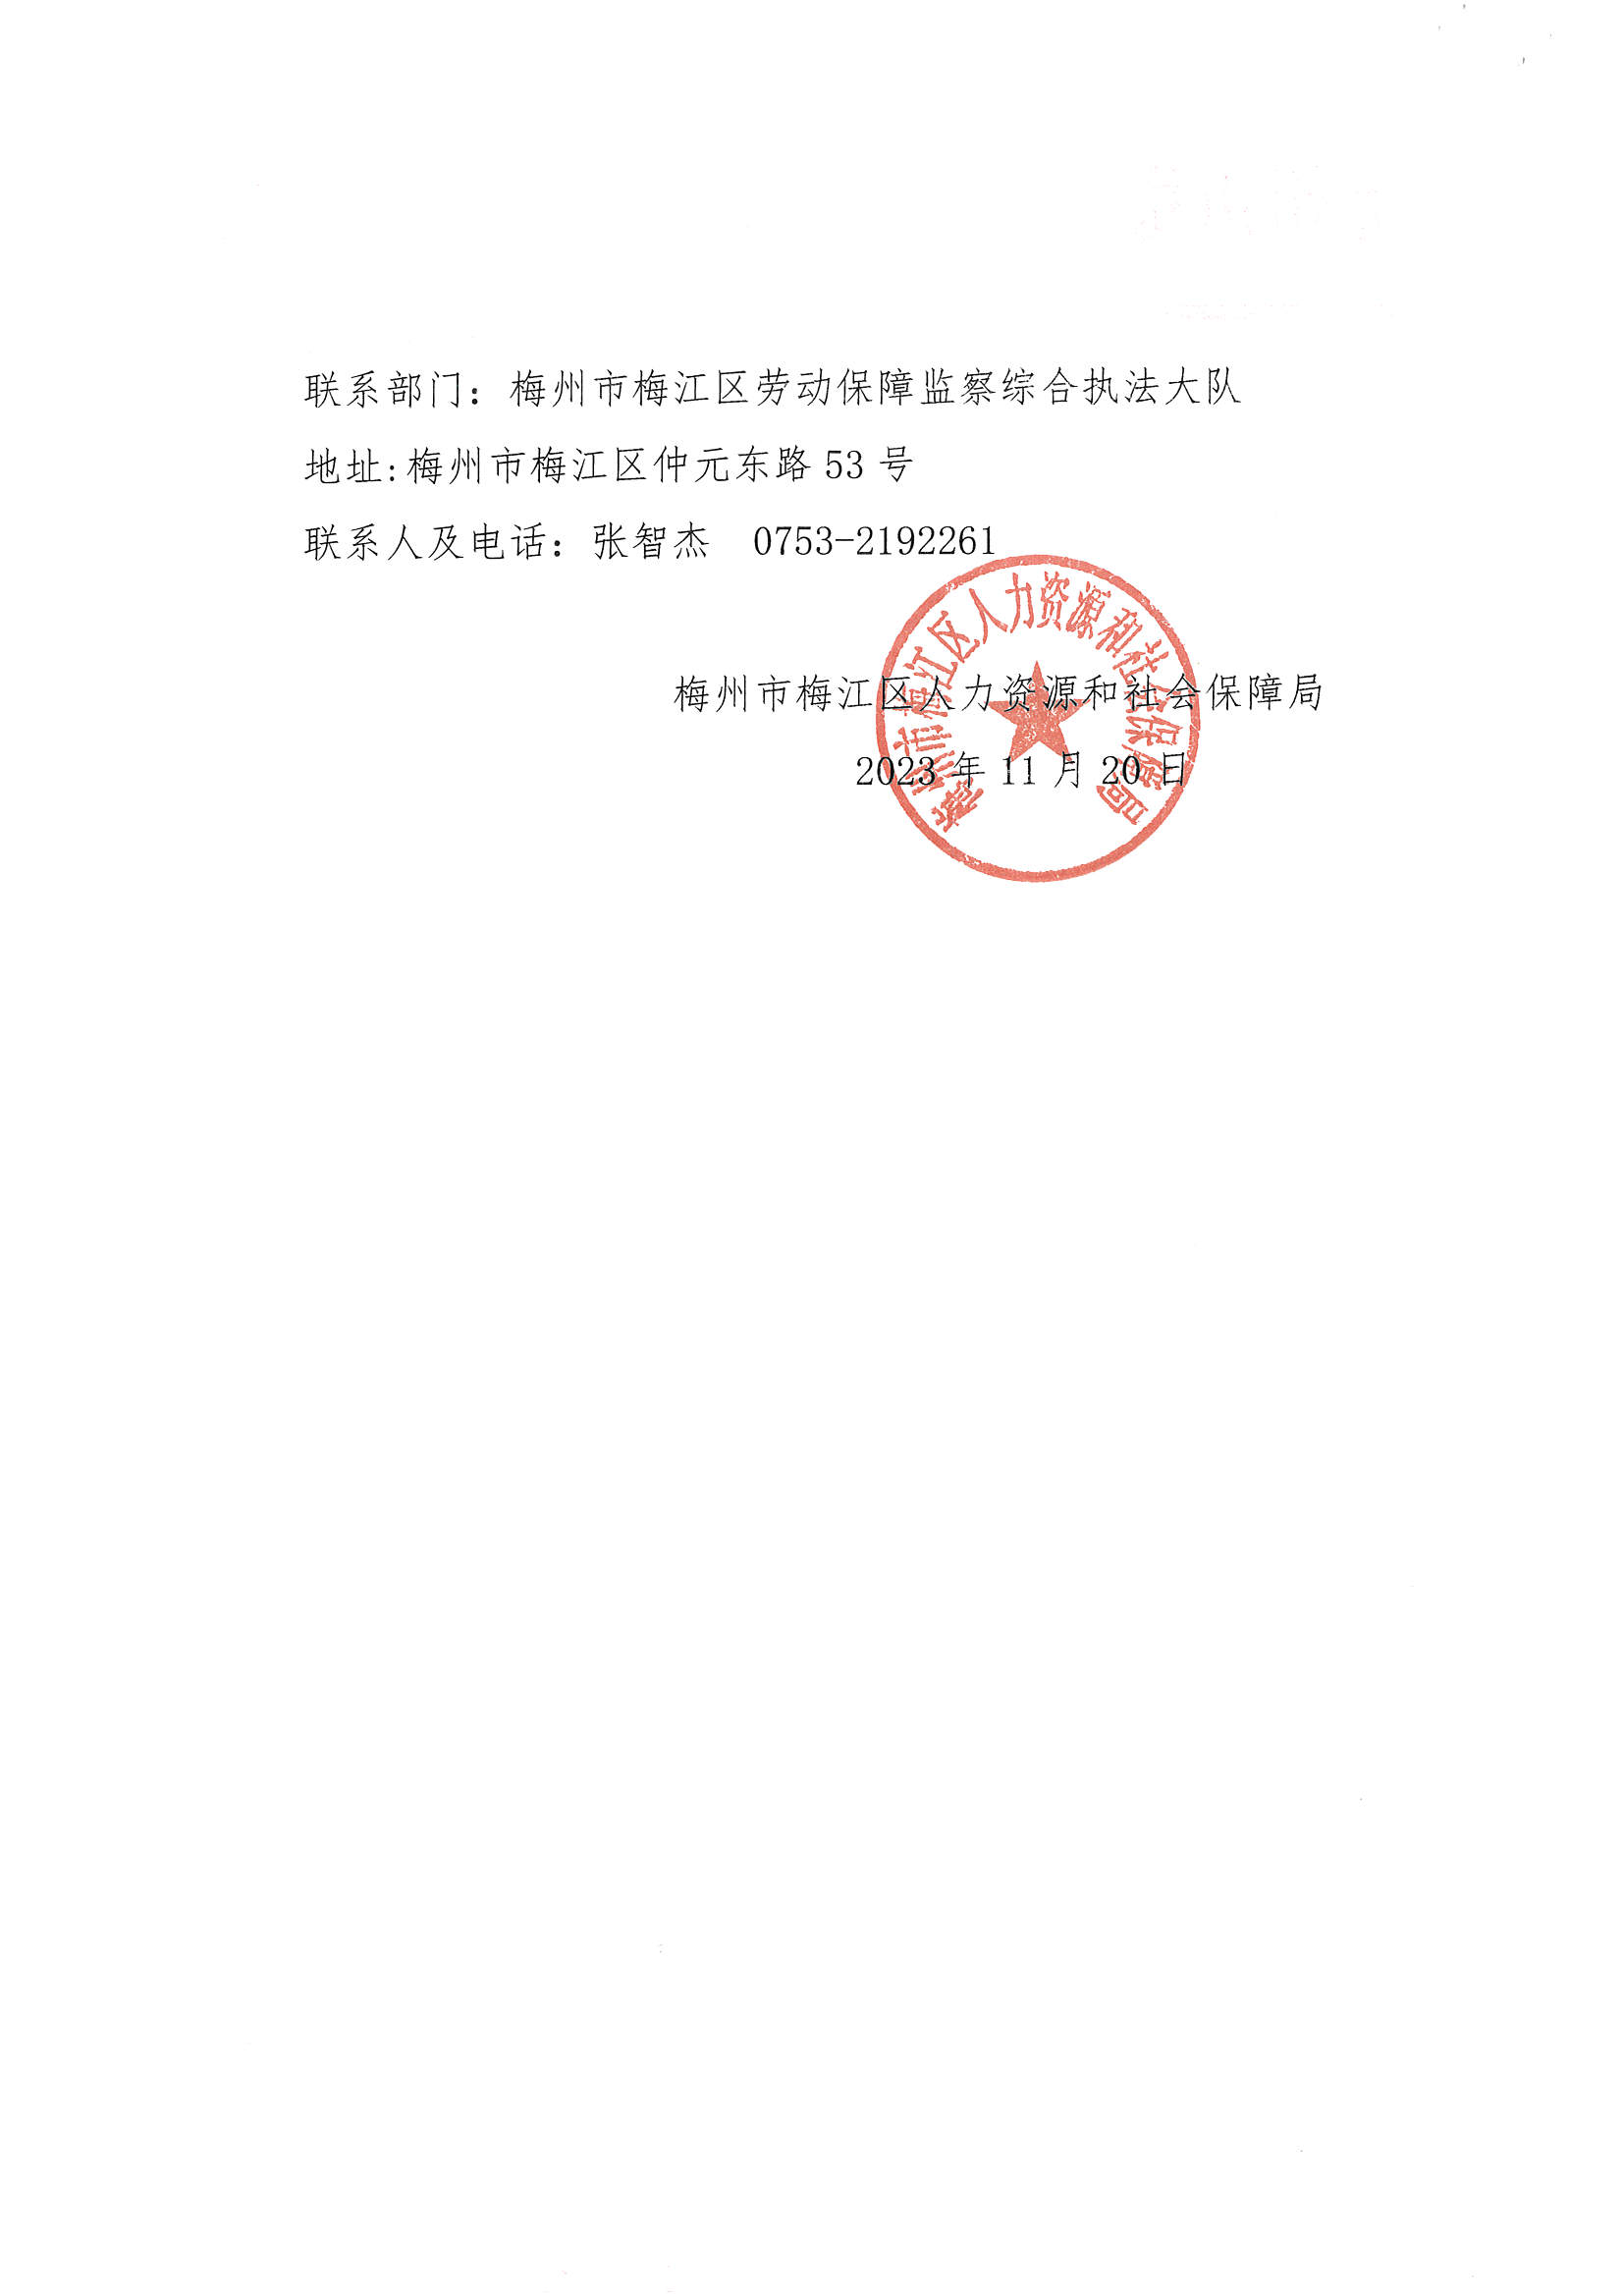 梅州市涛达建筑工程劳务分包有限公司公示文书（脱密）_页面_2.jpg